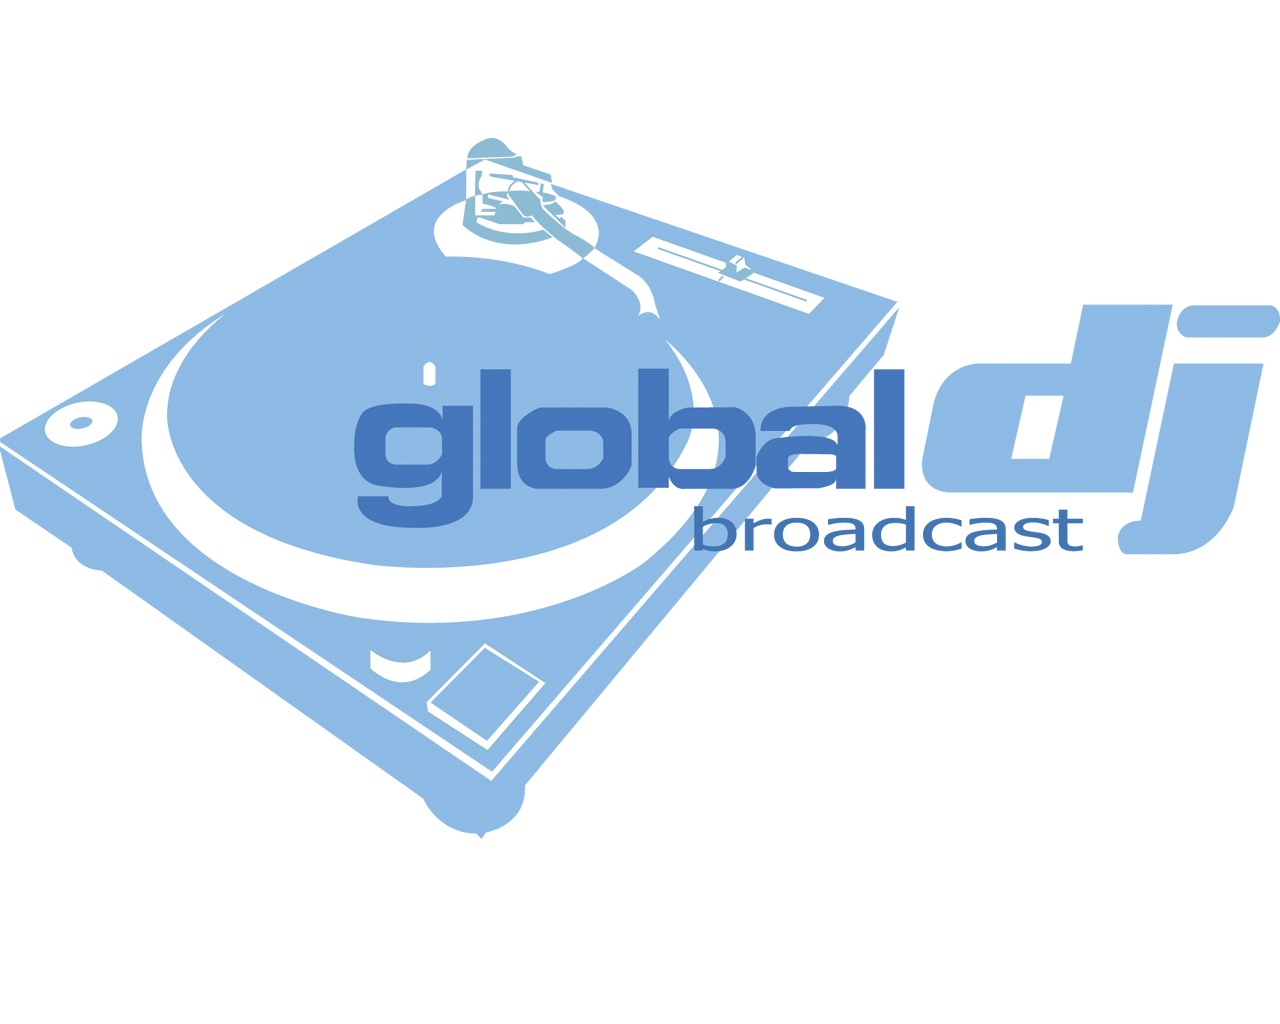 Global Dj Broadcast Radio Show Gdjb With Markus Schulz Wallpaper